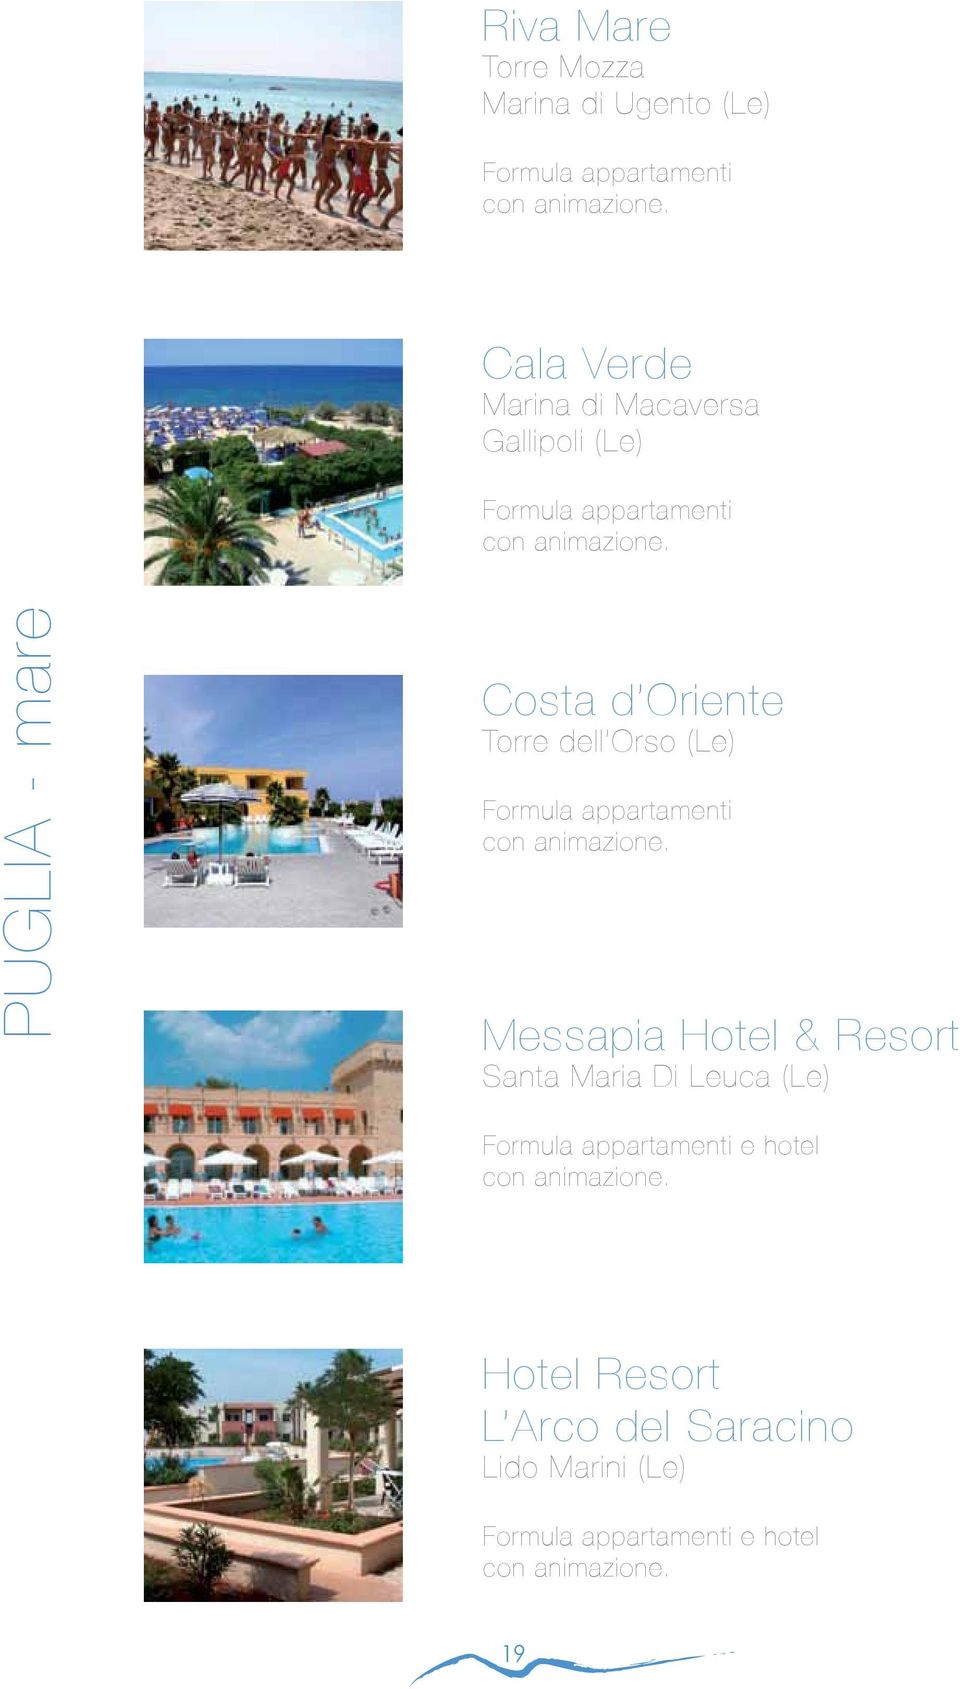 dell Orso (Le) Messapia Hotel & Resort Santa Maria Di Leuca (Le)